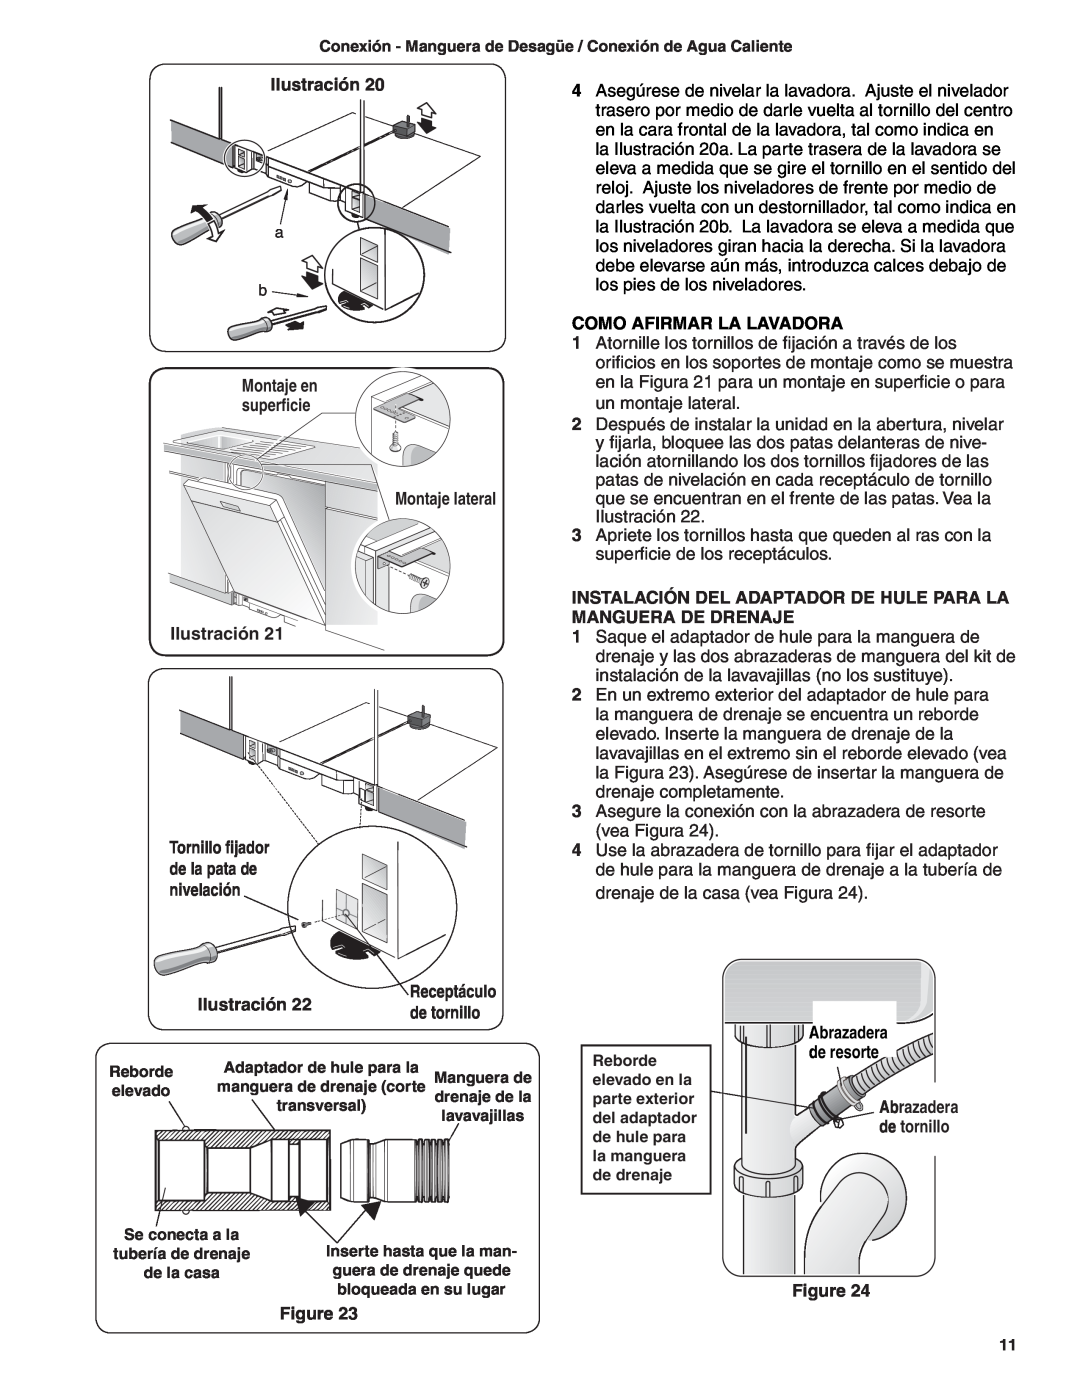 Bosch Appliances BSH Dishwasher Montaje lateral Ilustración, Como Afirmar La Lavadora, Receptáculo, de tornillo 